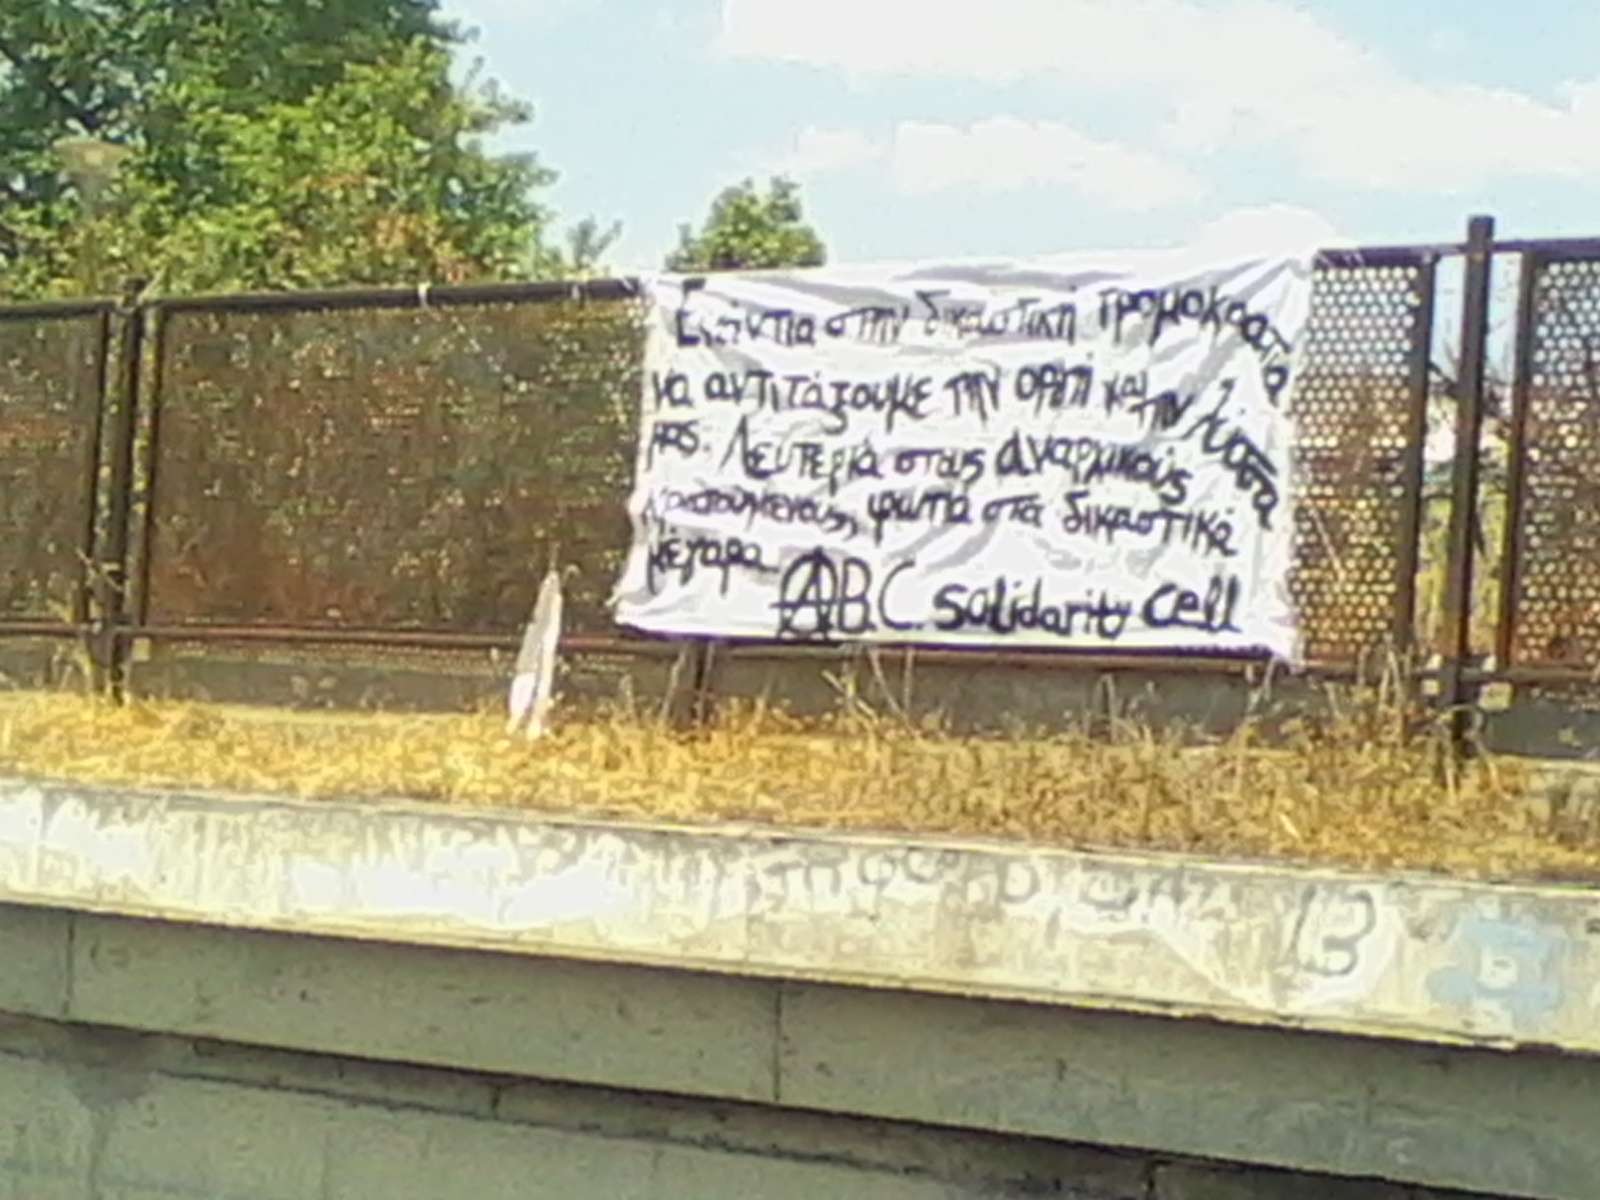 Αθήνα: Ανάρτηση πανό στη γέφυρα της Μουστοξύδη [από A.B.C. solidarity cell]